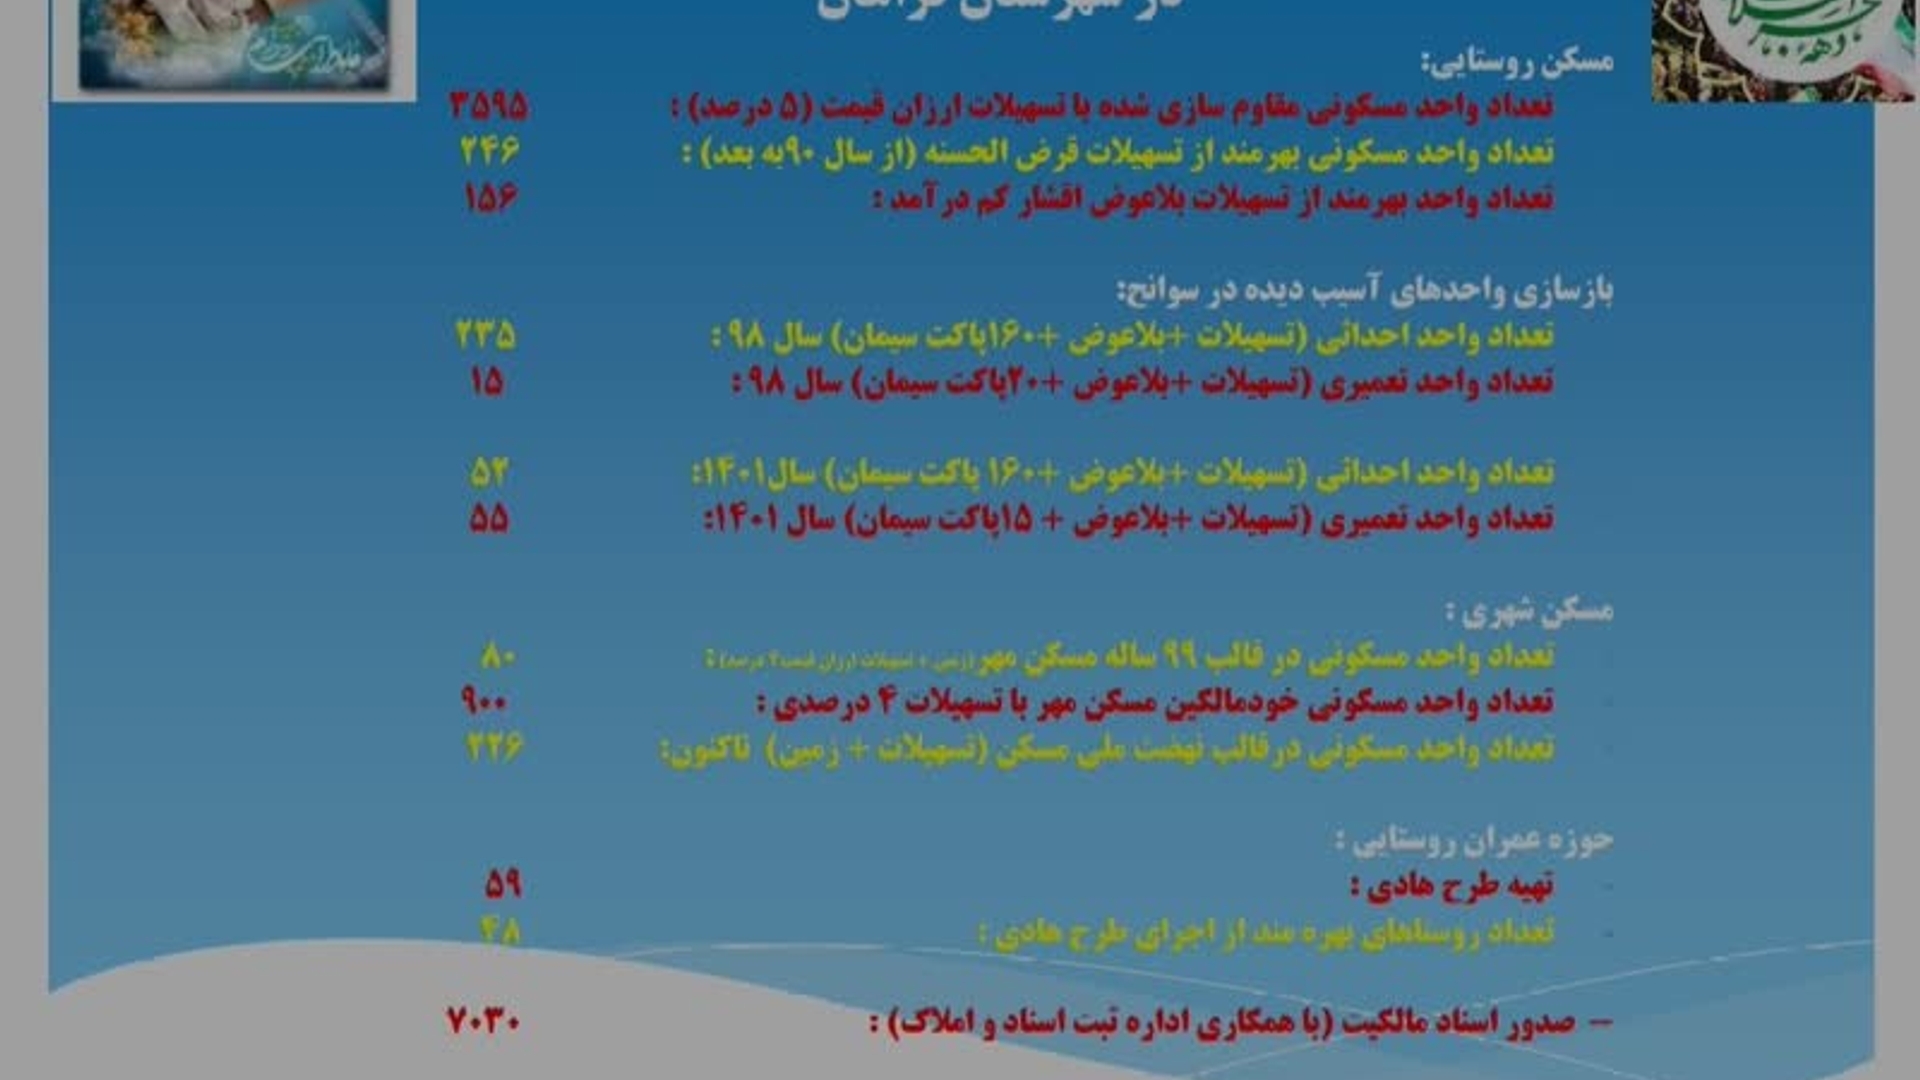 خلاصه گزارش عملکرد بنیاد مسکن در شهرستان فراهان